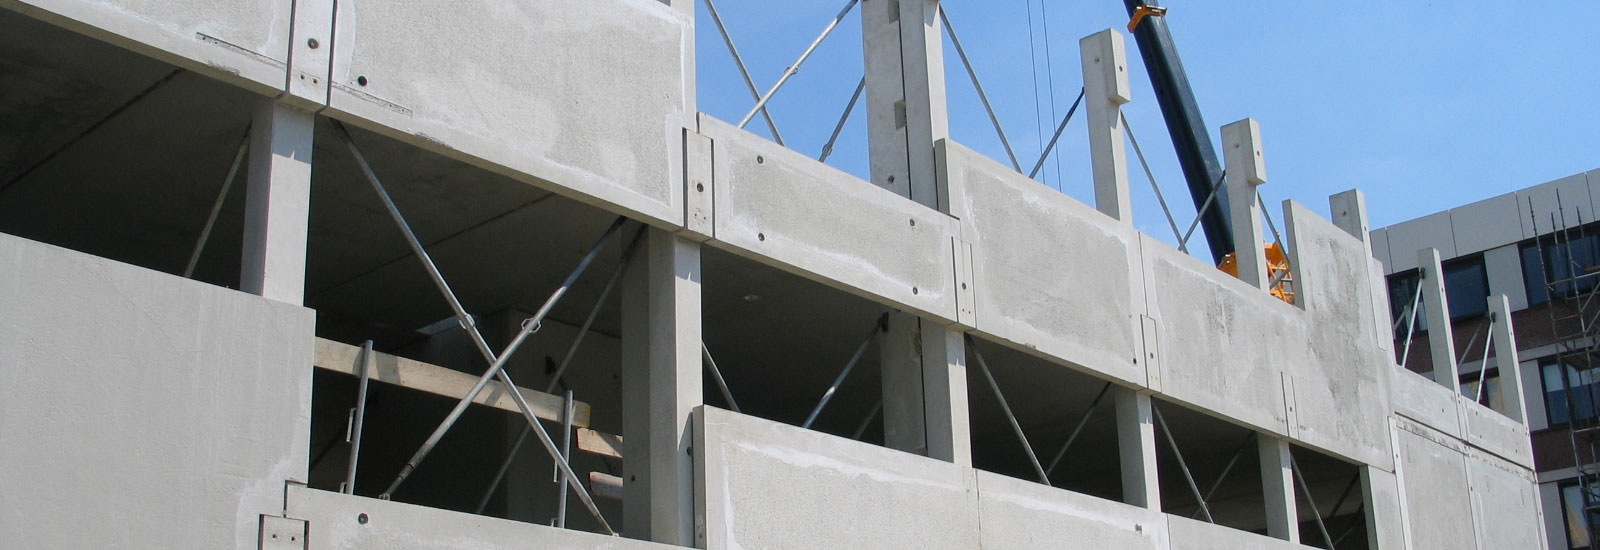 Betonhuis brengt zo'n 200 bedrijven uit de betonindustrie samen